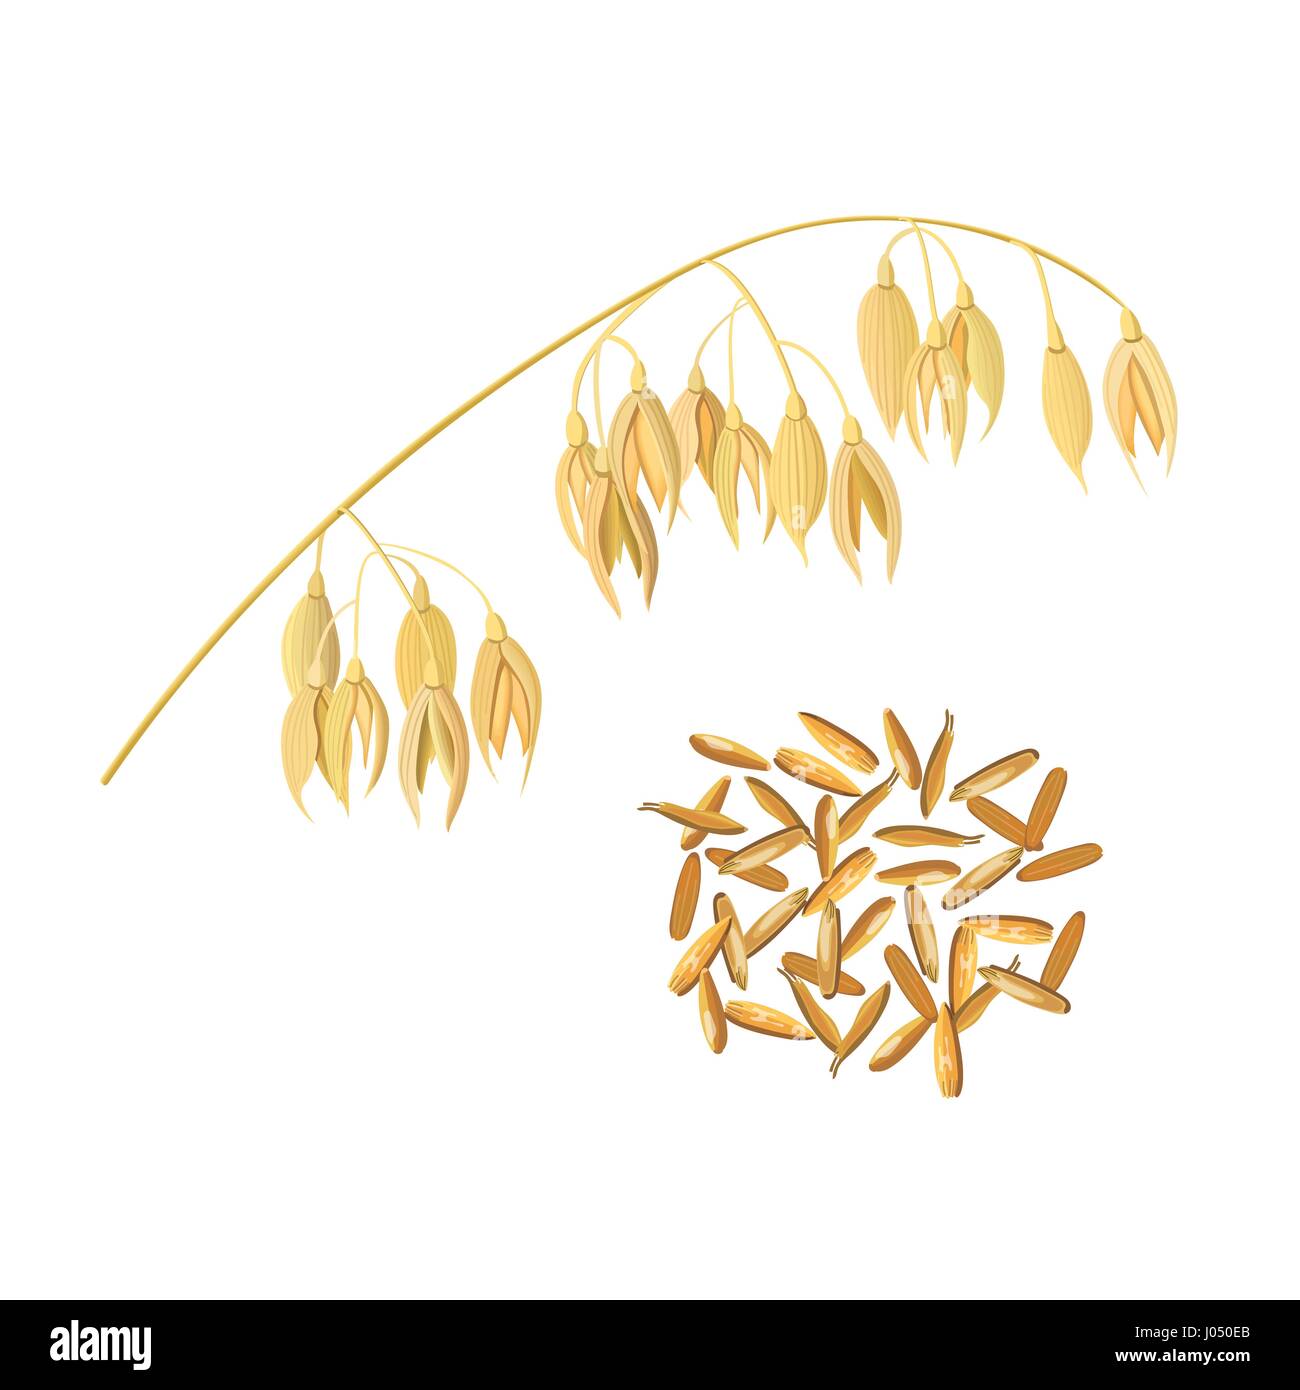 Hafer-Ohren von Getreide und Kleie isoliert auf weißem Hintergrund. Golden Spike. Seitenansicht. Hautnah. Vektor-Illustration. Zum Kochen, Food-Design, Kosmetik, Stock Vektor